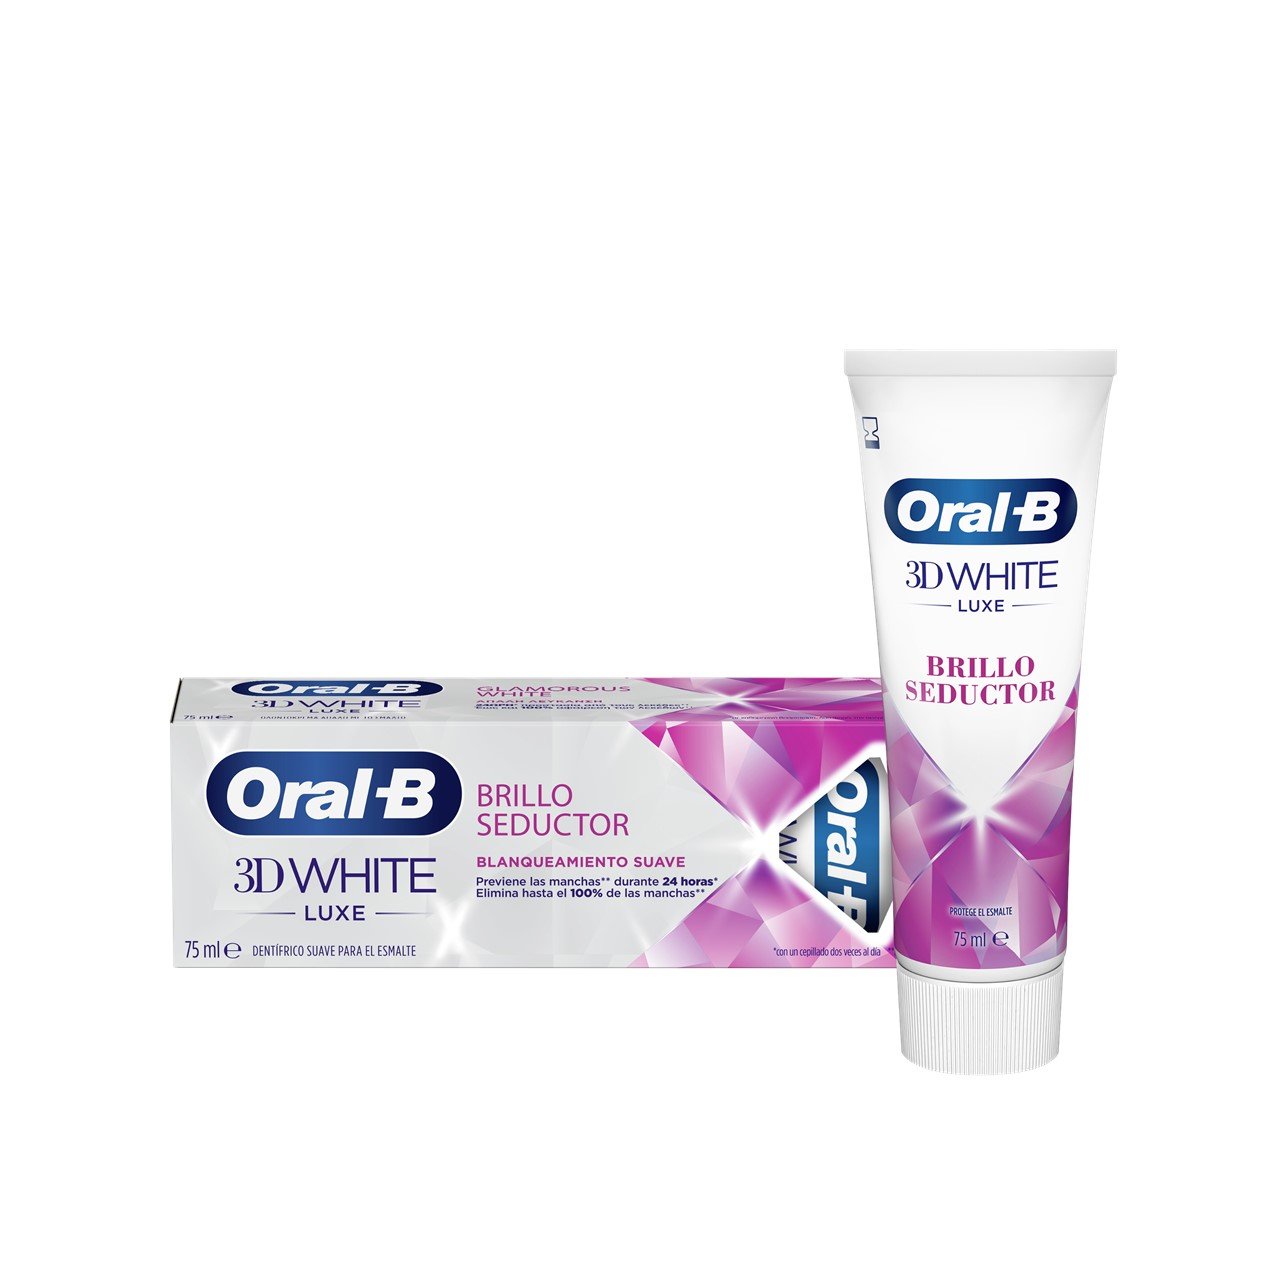 Interactie vrachtauto fantoom Buy Oral-B 3D White Luxe Glamorous White Whitening Toothpaste 75ml (2.54fl  oz) · USA